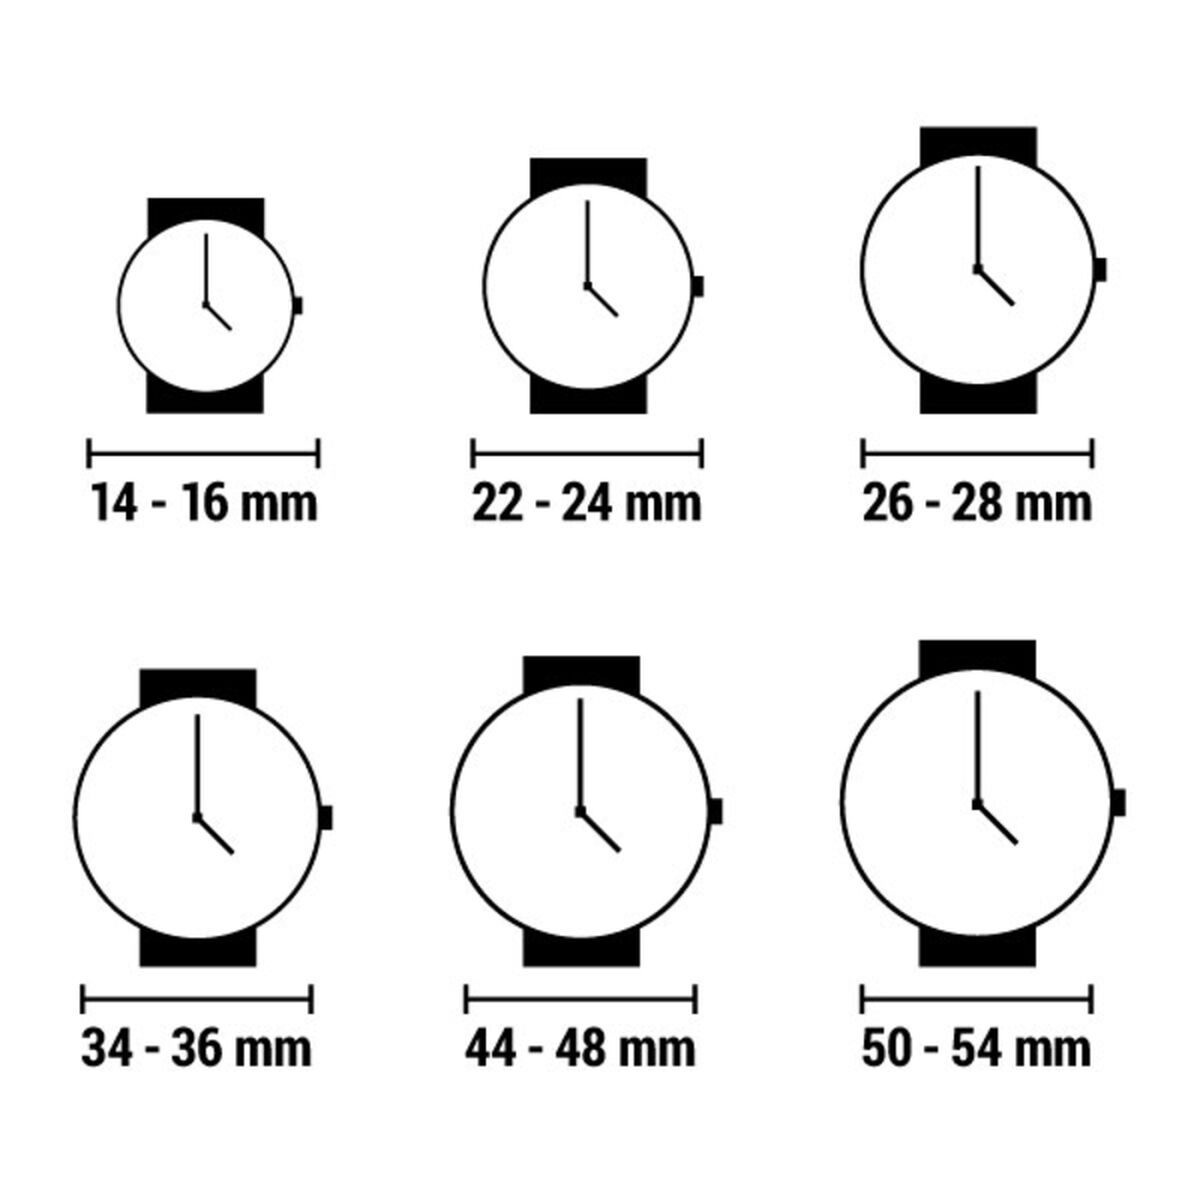 Horloge Dames Chronotech CT7704LS-06 (Ø 33 mm)